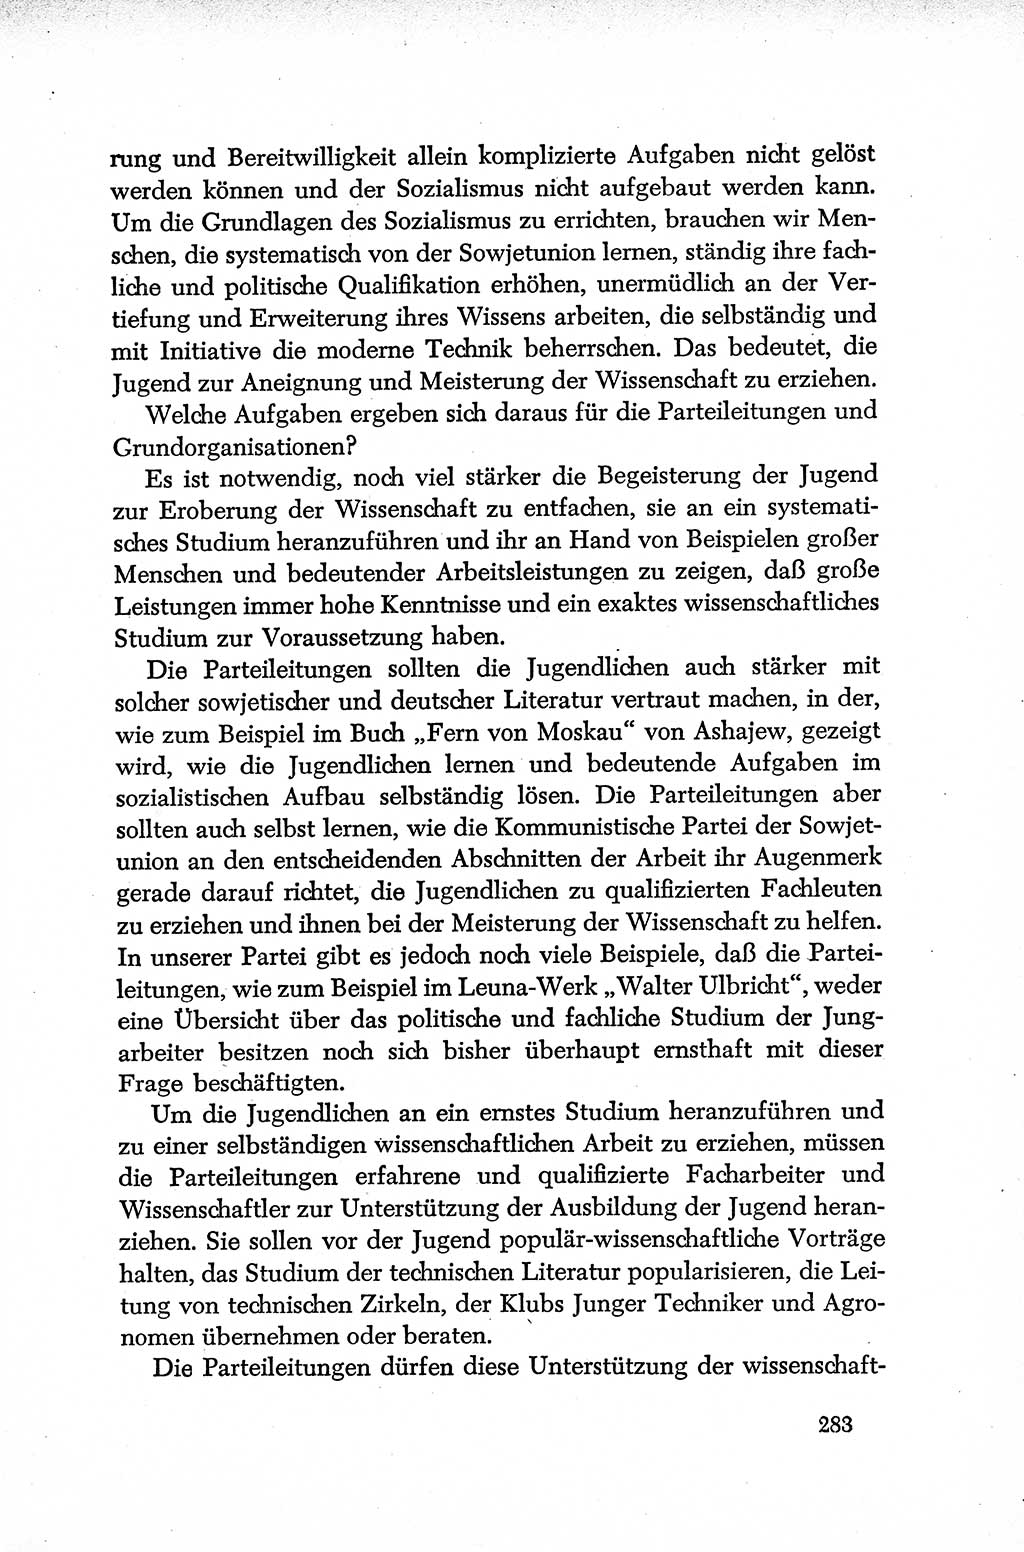 Dokumente der Sozialistischen Einheitspartei Deutschlands (SED) [Deutsche Demokratische Republik (DDR)] 1952-1953, Seite 283 (Dok. SED DDR 1952-1953, S. 283)